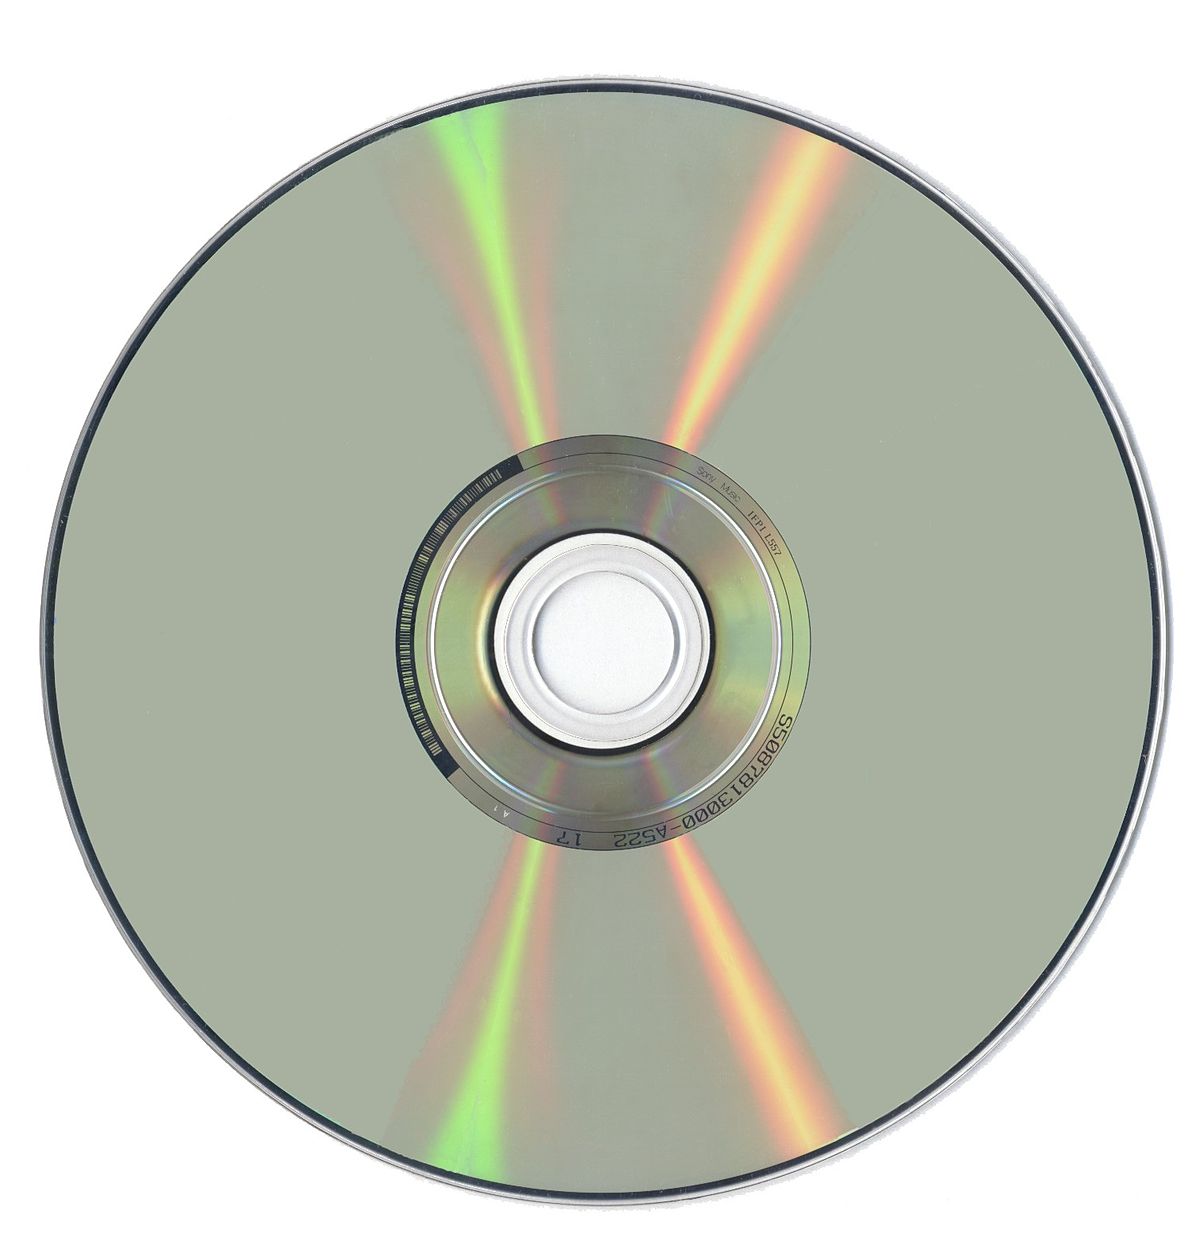 The Best CD Repair Kits of 2023